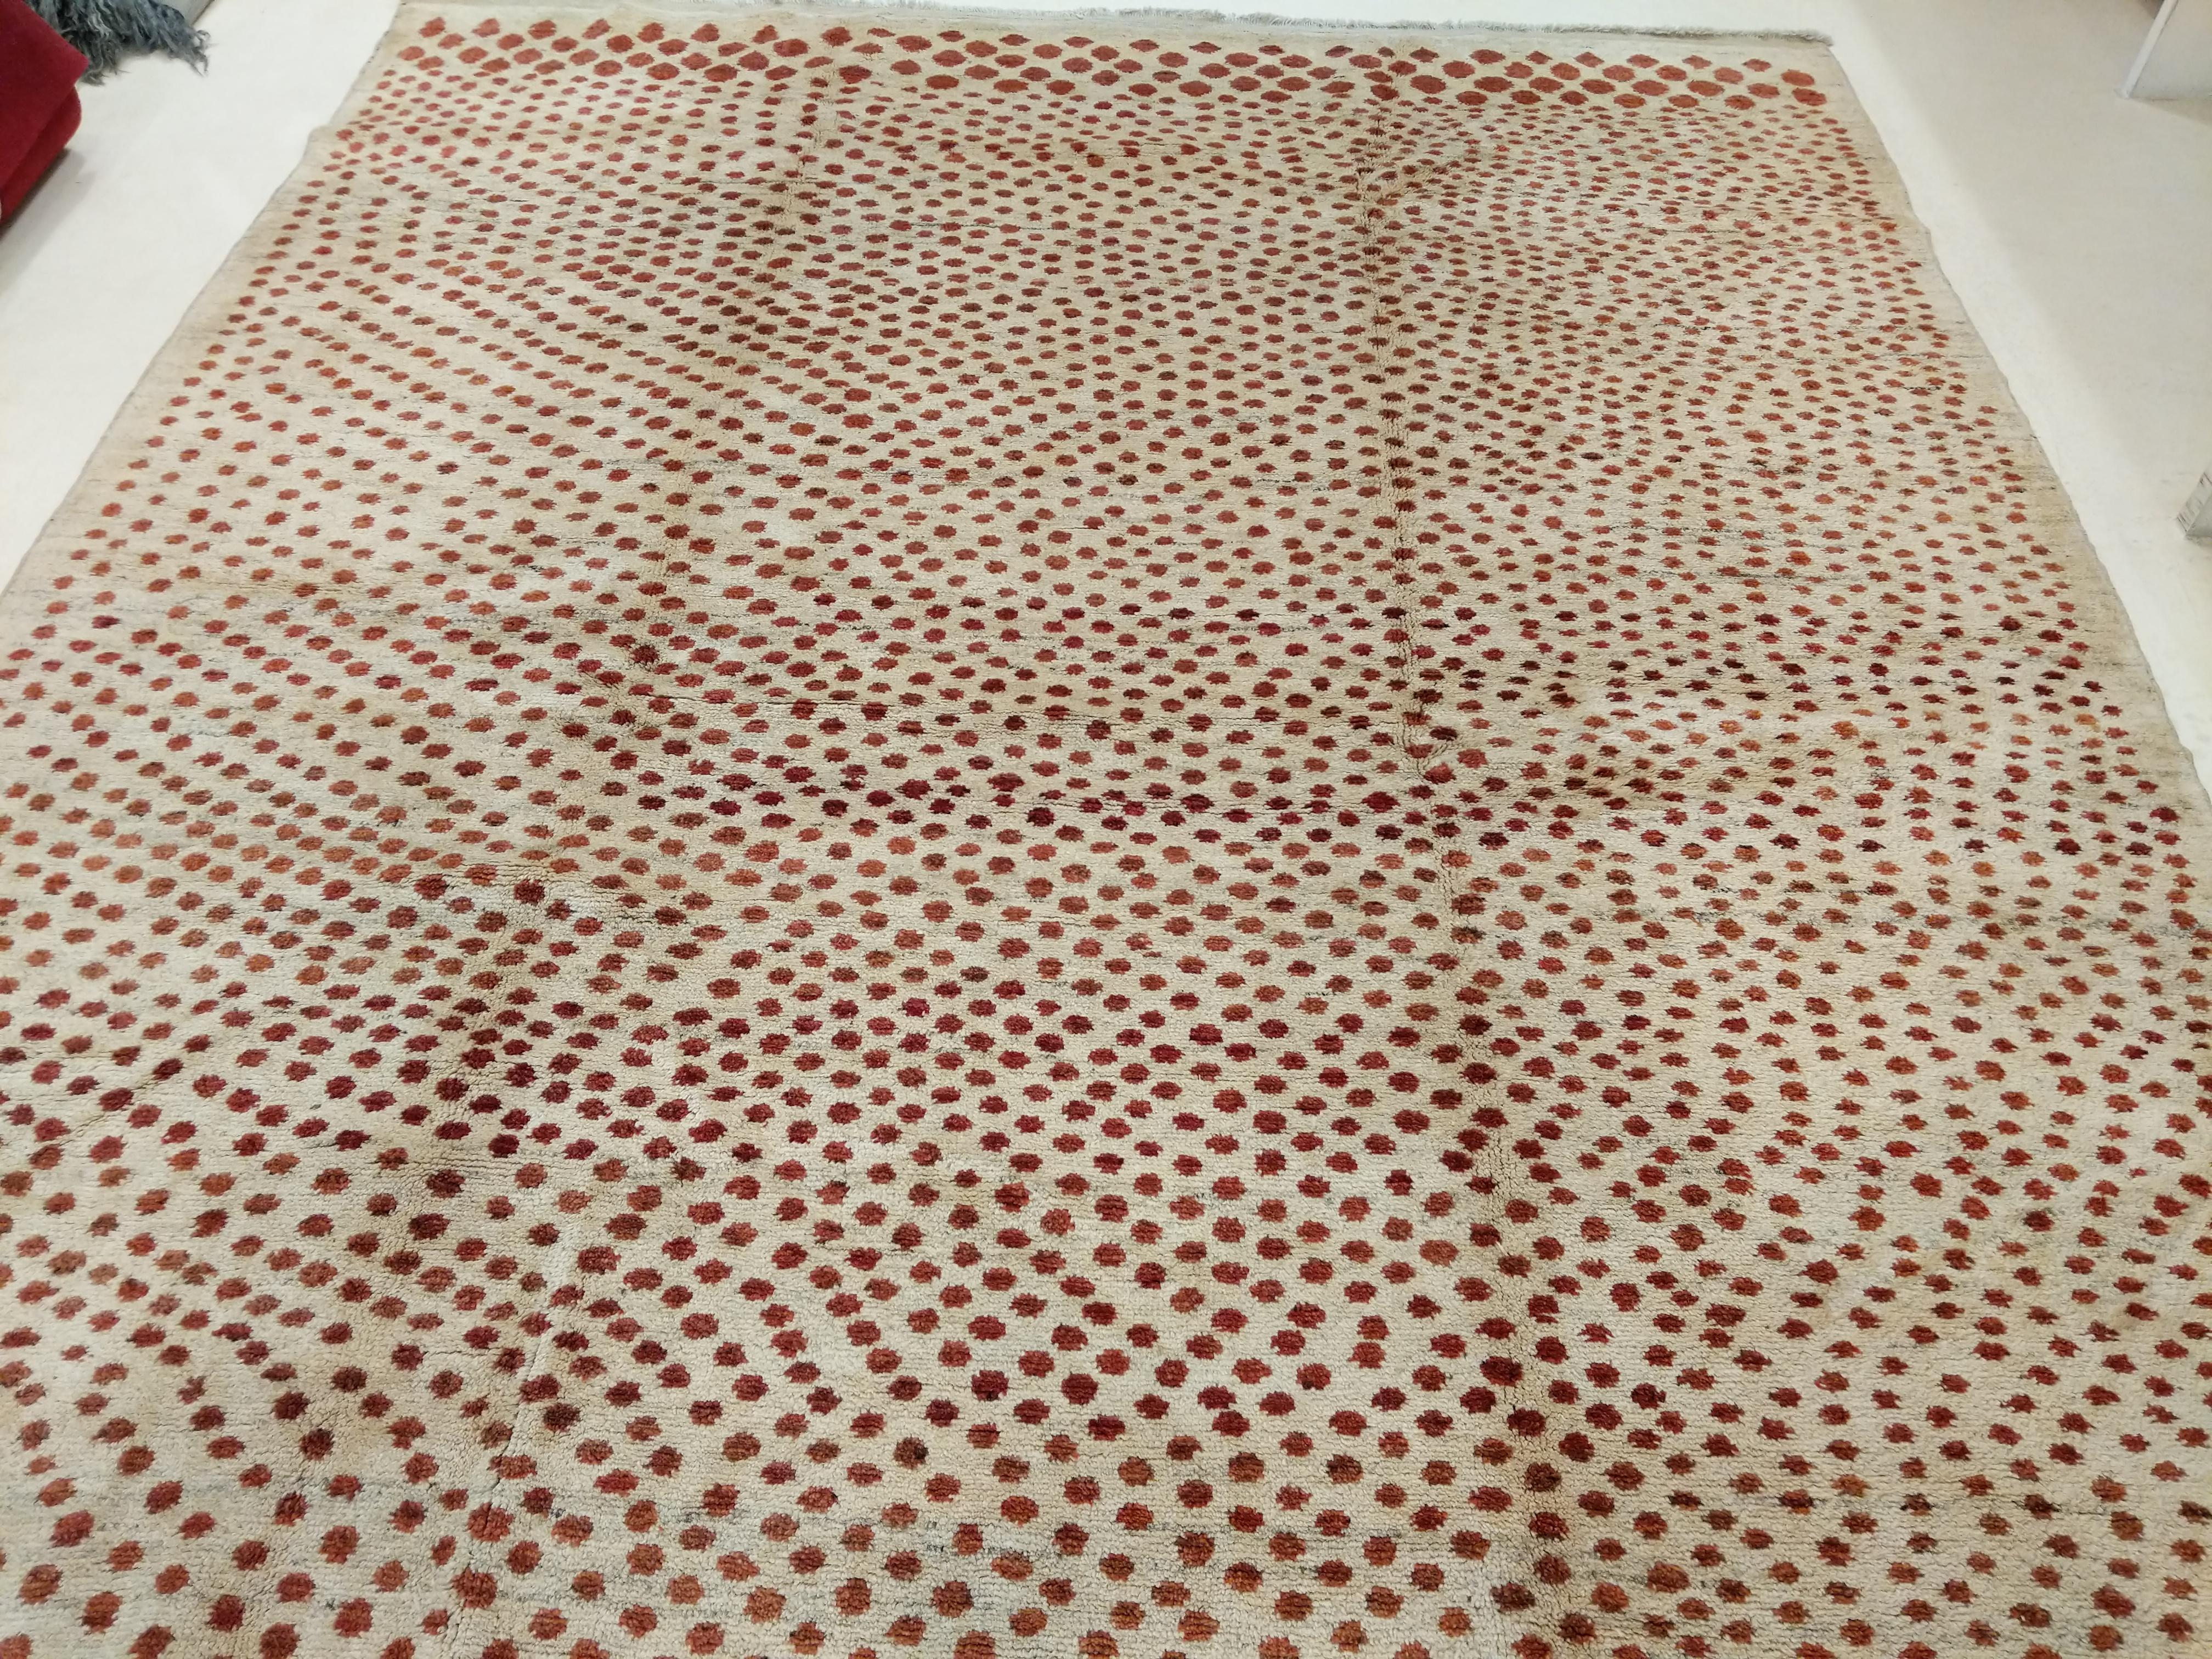 Ein fein gewebter Wollteppich, der sich durch ein pointillistisches Muster aus roten Punkten unterschiedlicher Größe auszeichnet, die einen natürlichen beigen Hintergrund unterbrechen. Das daraus resultierende Muster ahmt das Muster von